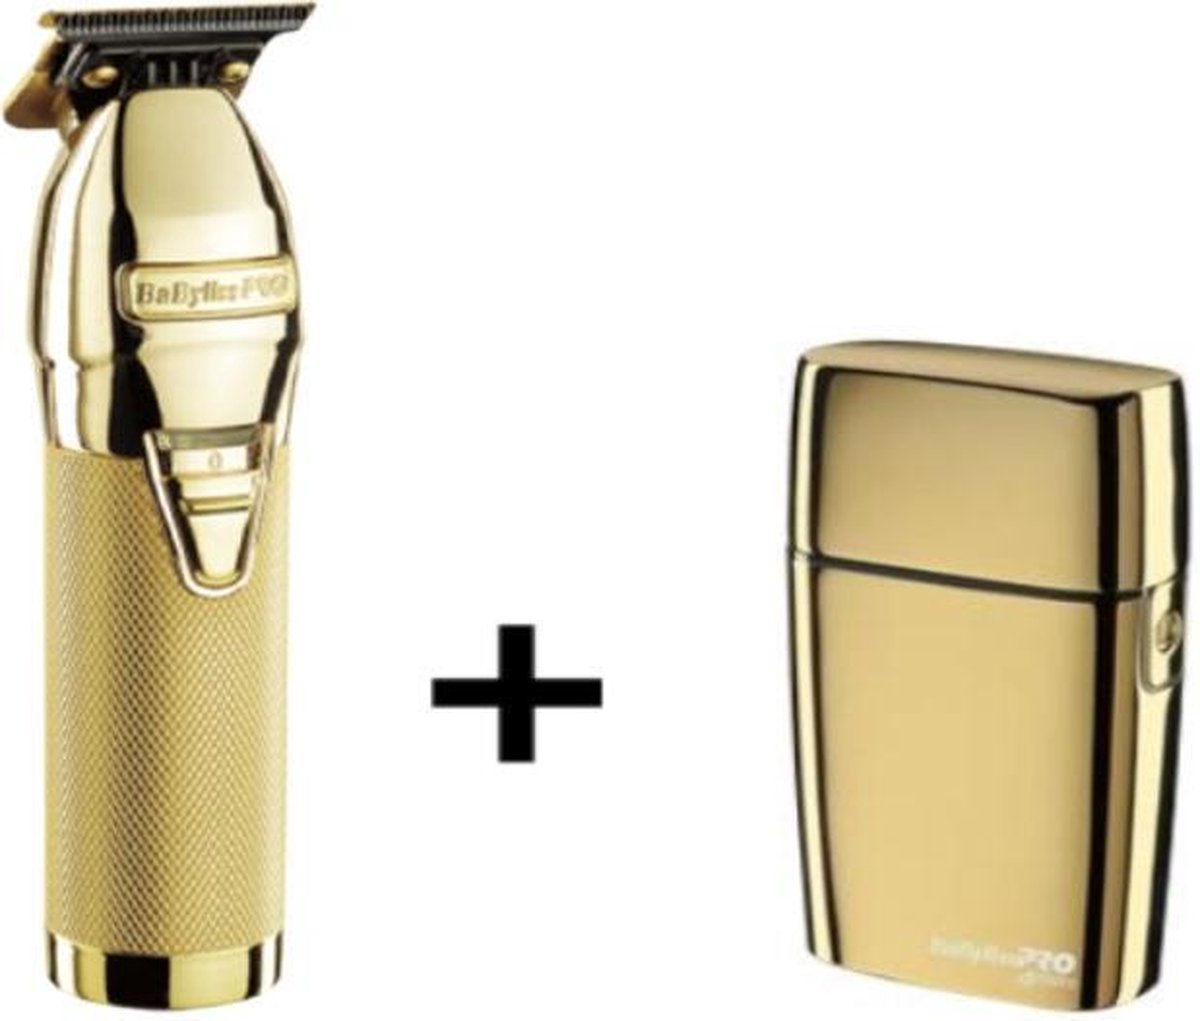 BaByliss Pro Skeleton trimmer Gold + Babyliss Pro FoilFX02 Shaver Gold